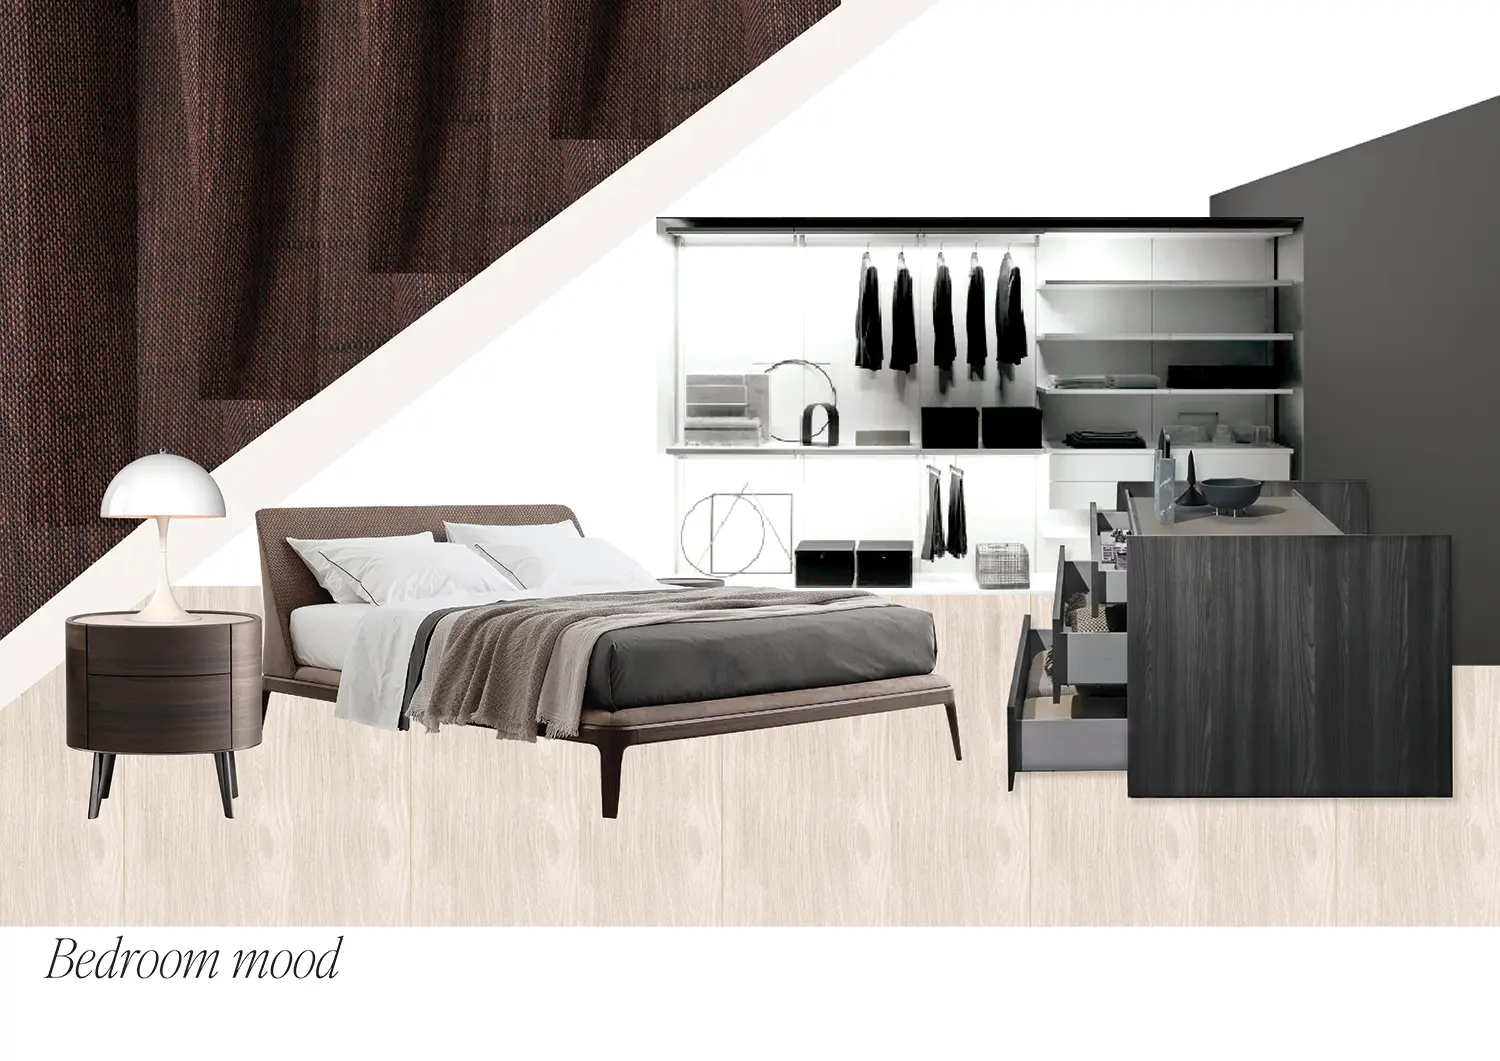 Moodboard d'inspiration pour le choix des meubles et des matériaux pour le projet de rénovation de la chambre à coucher et du dressing.